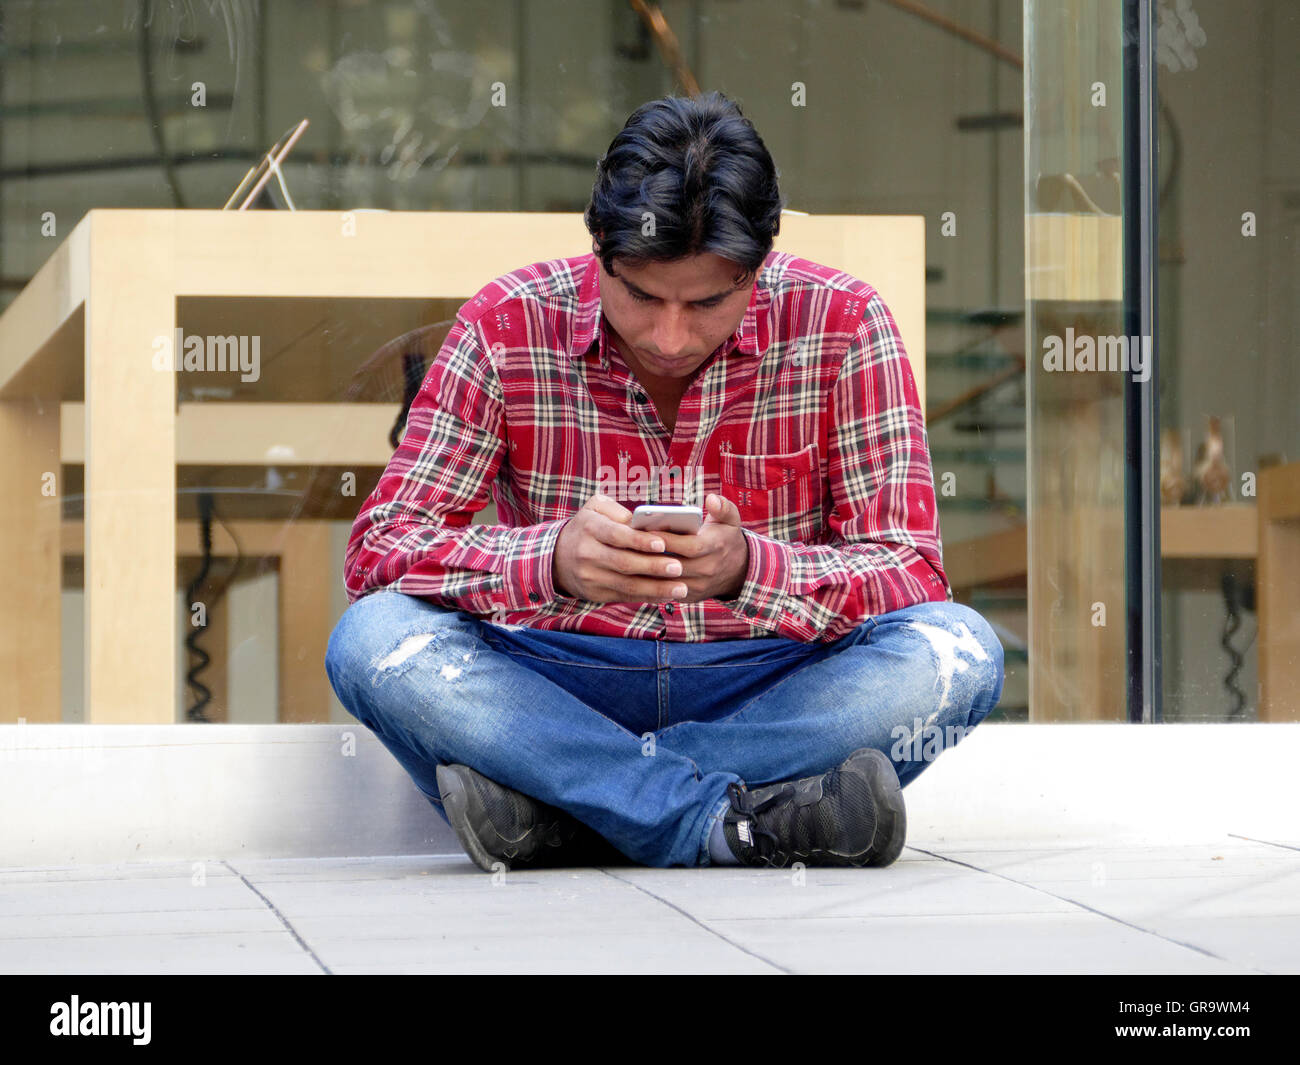 El hombre o la pareja conectar el smartphone a un punto fuera de una tienda de Apple. Foto de stock